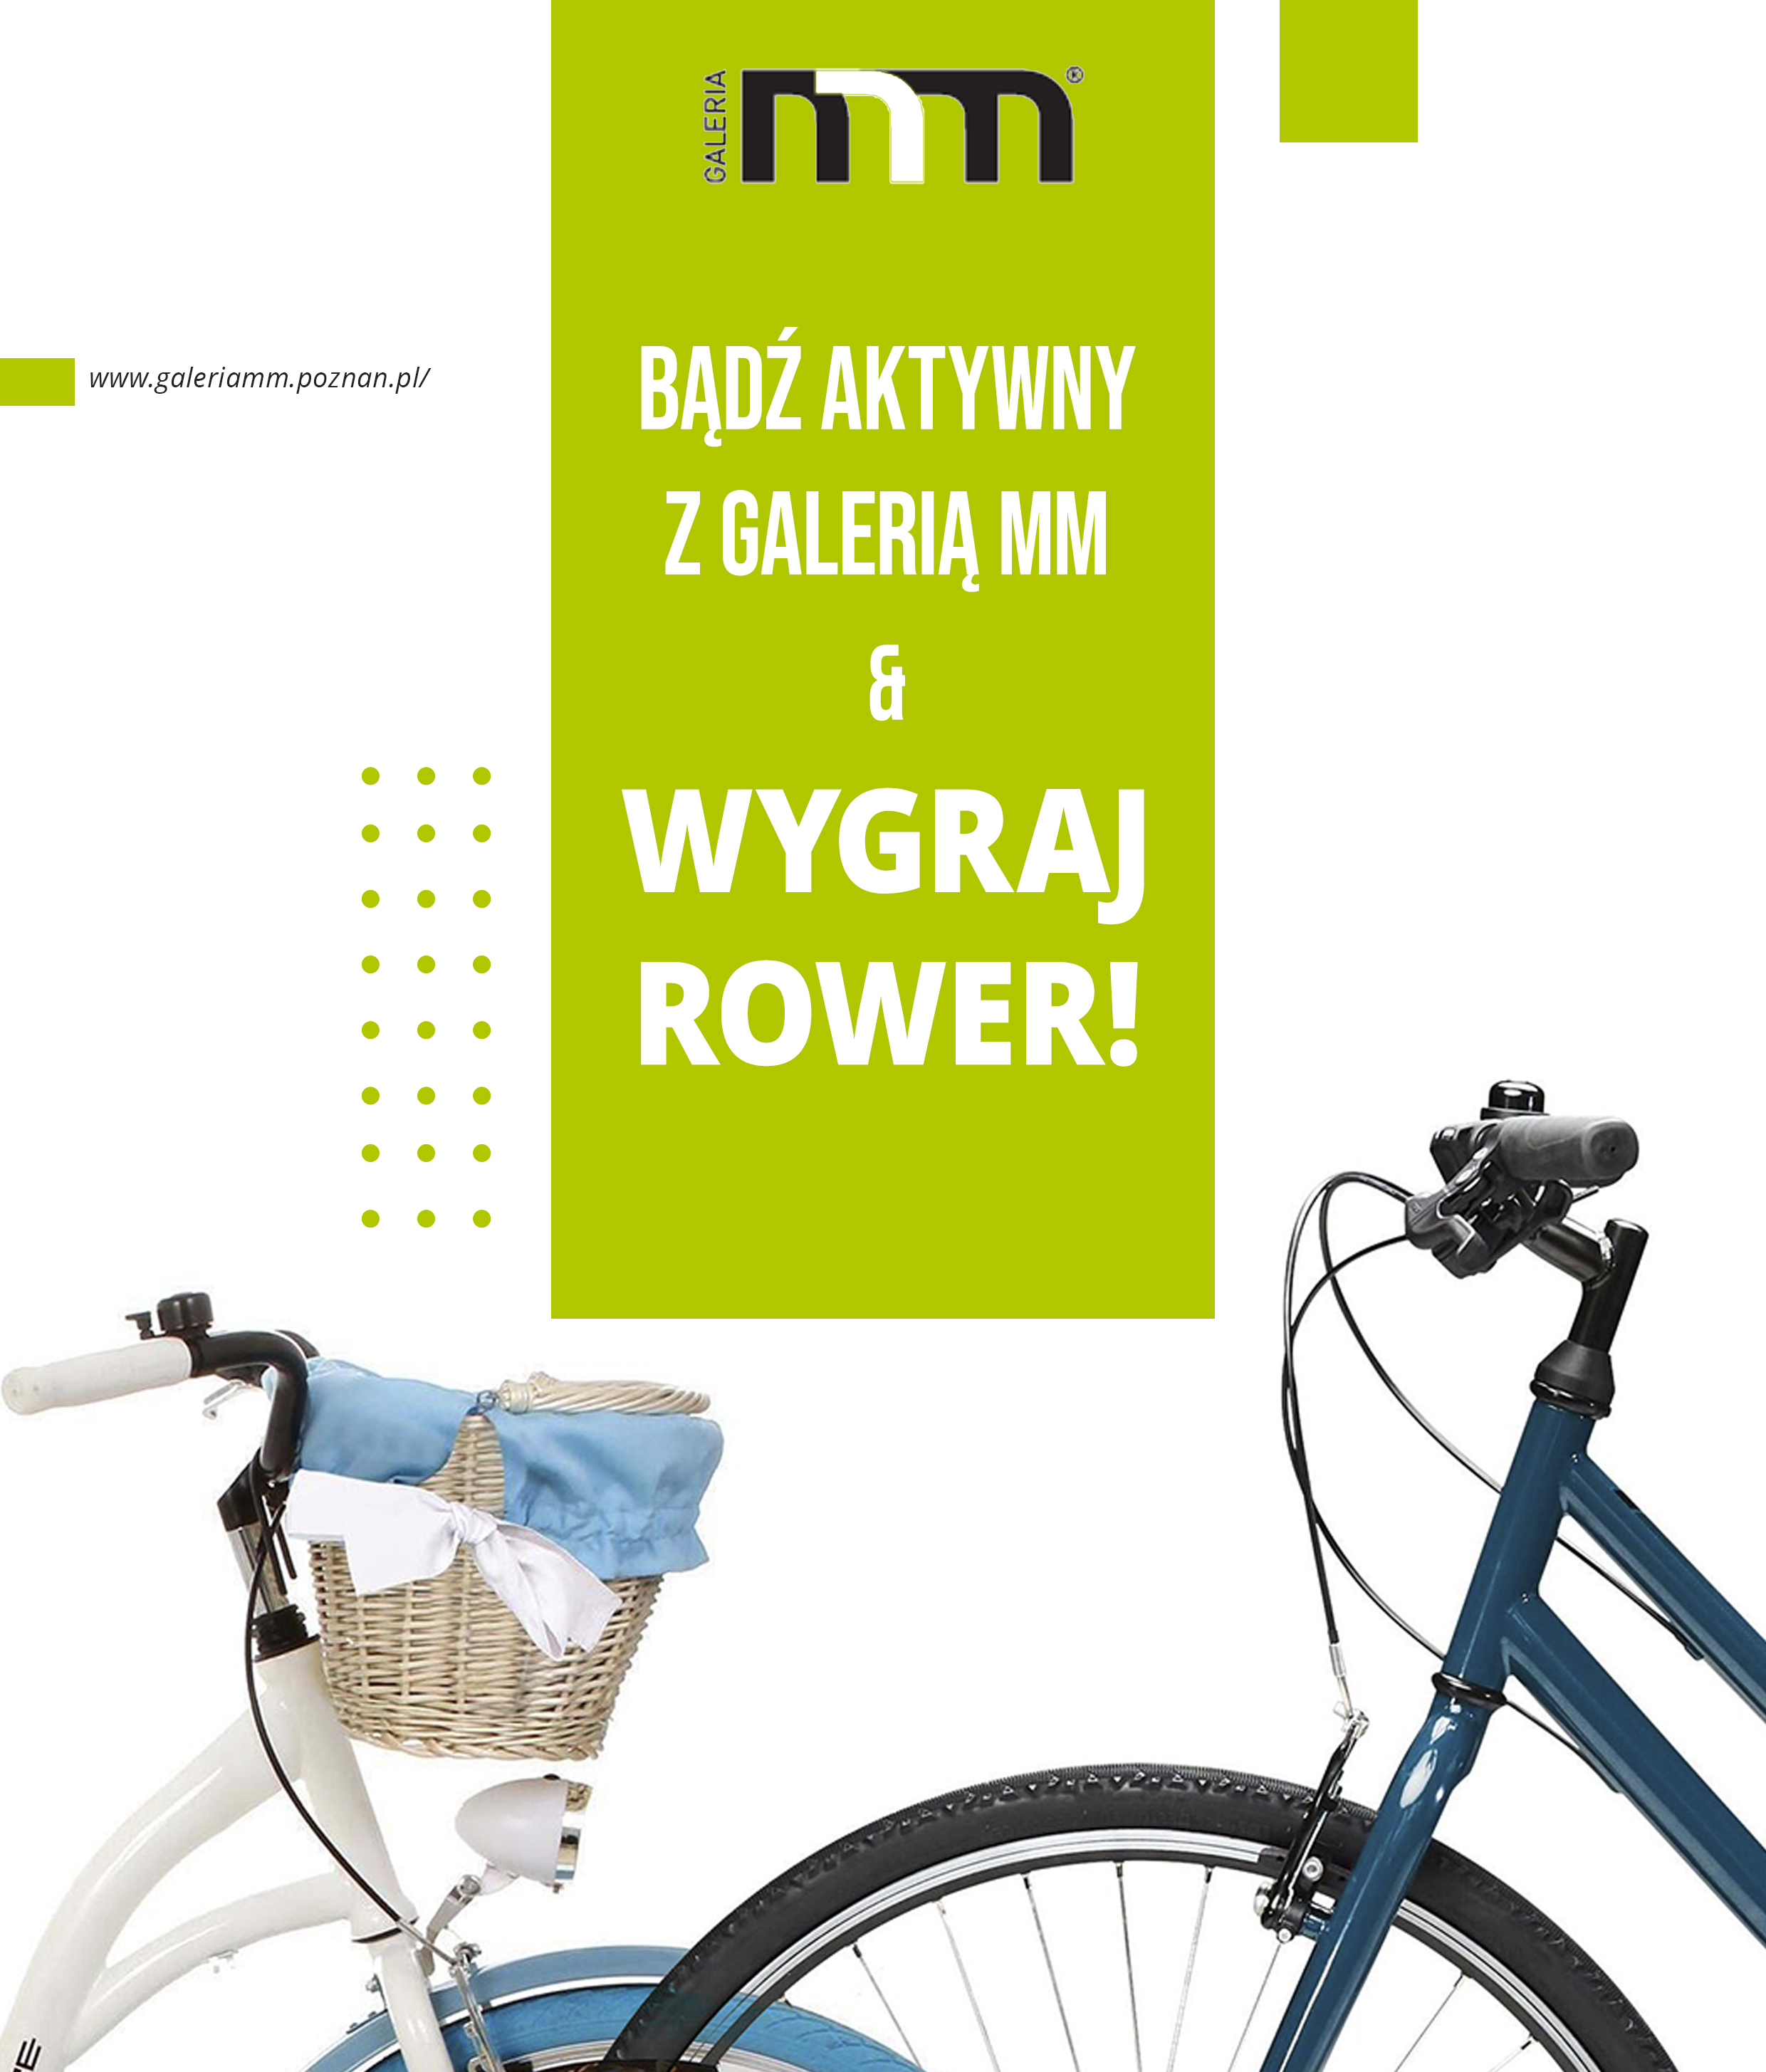 Bądź aktywny z Galerią MM i wygraj rower!